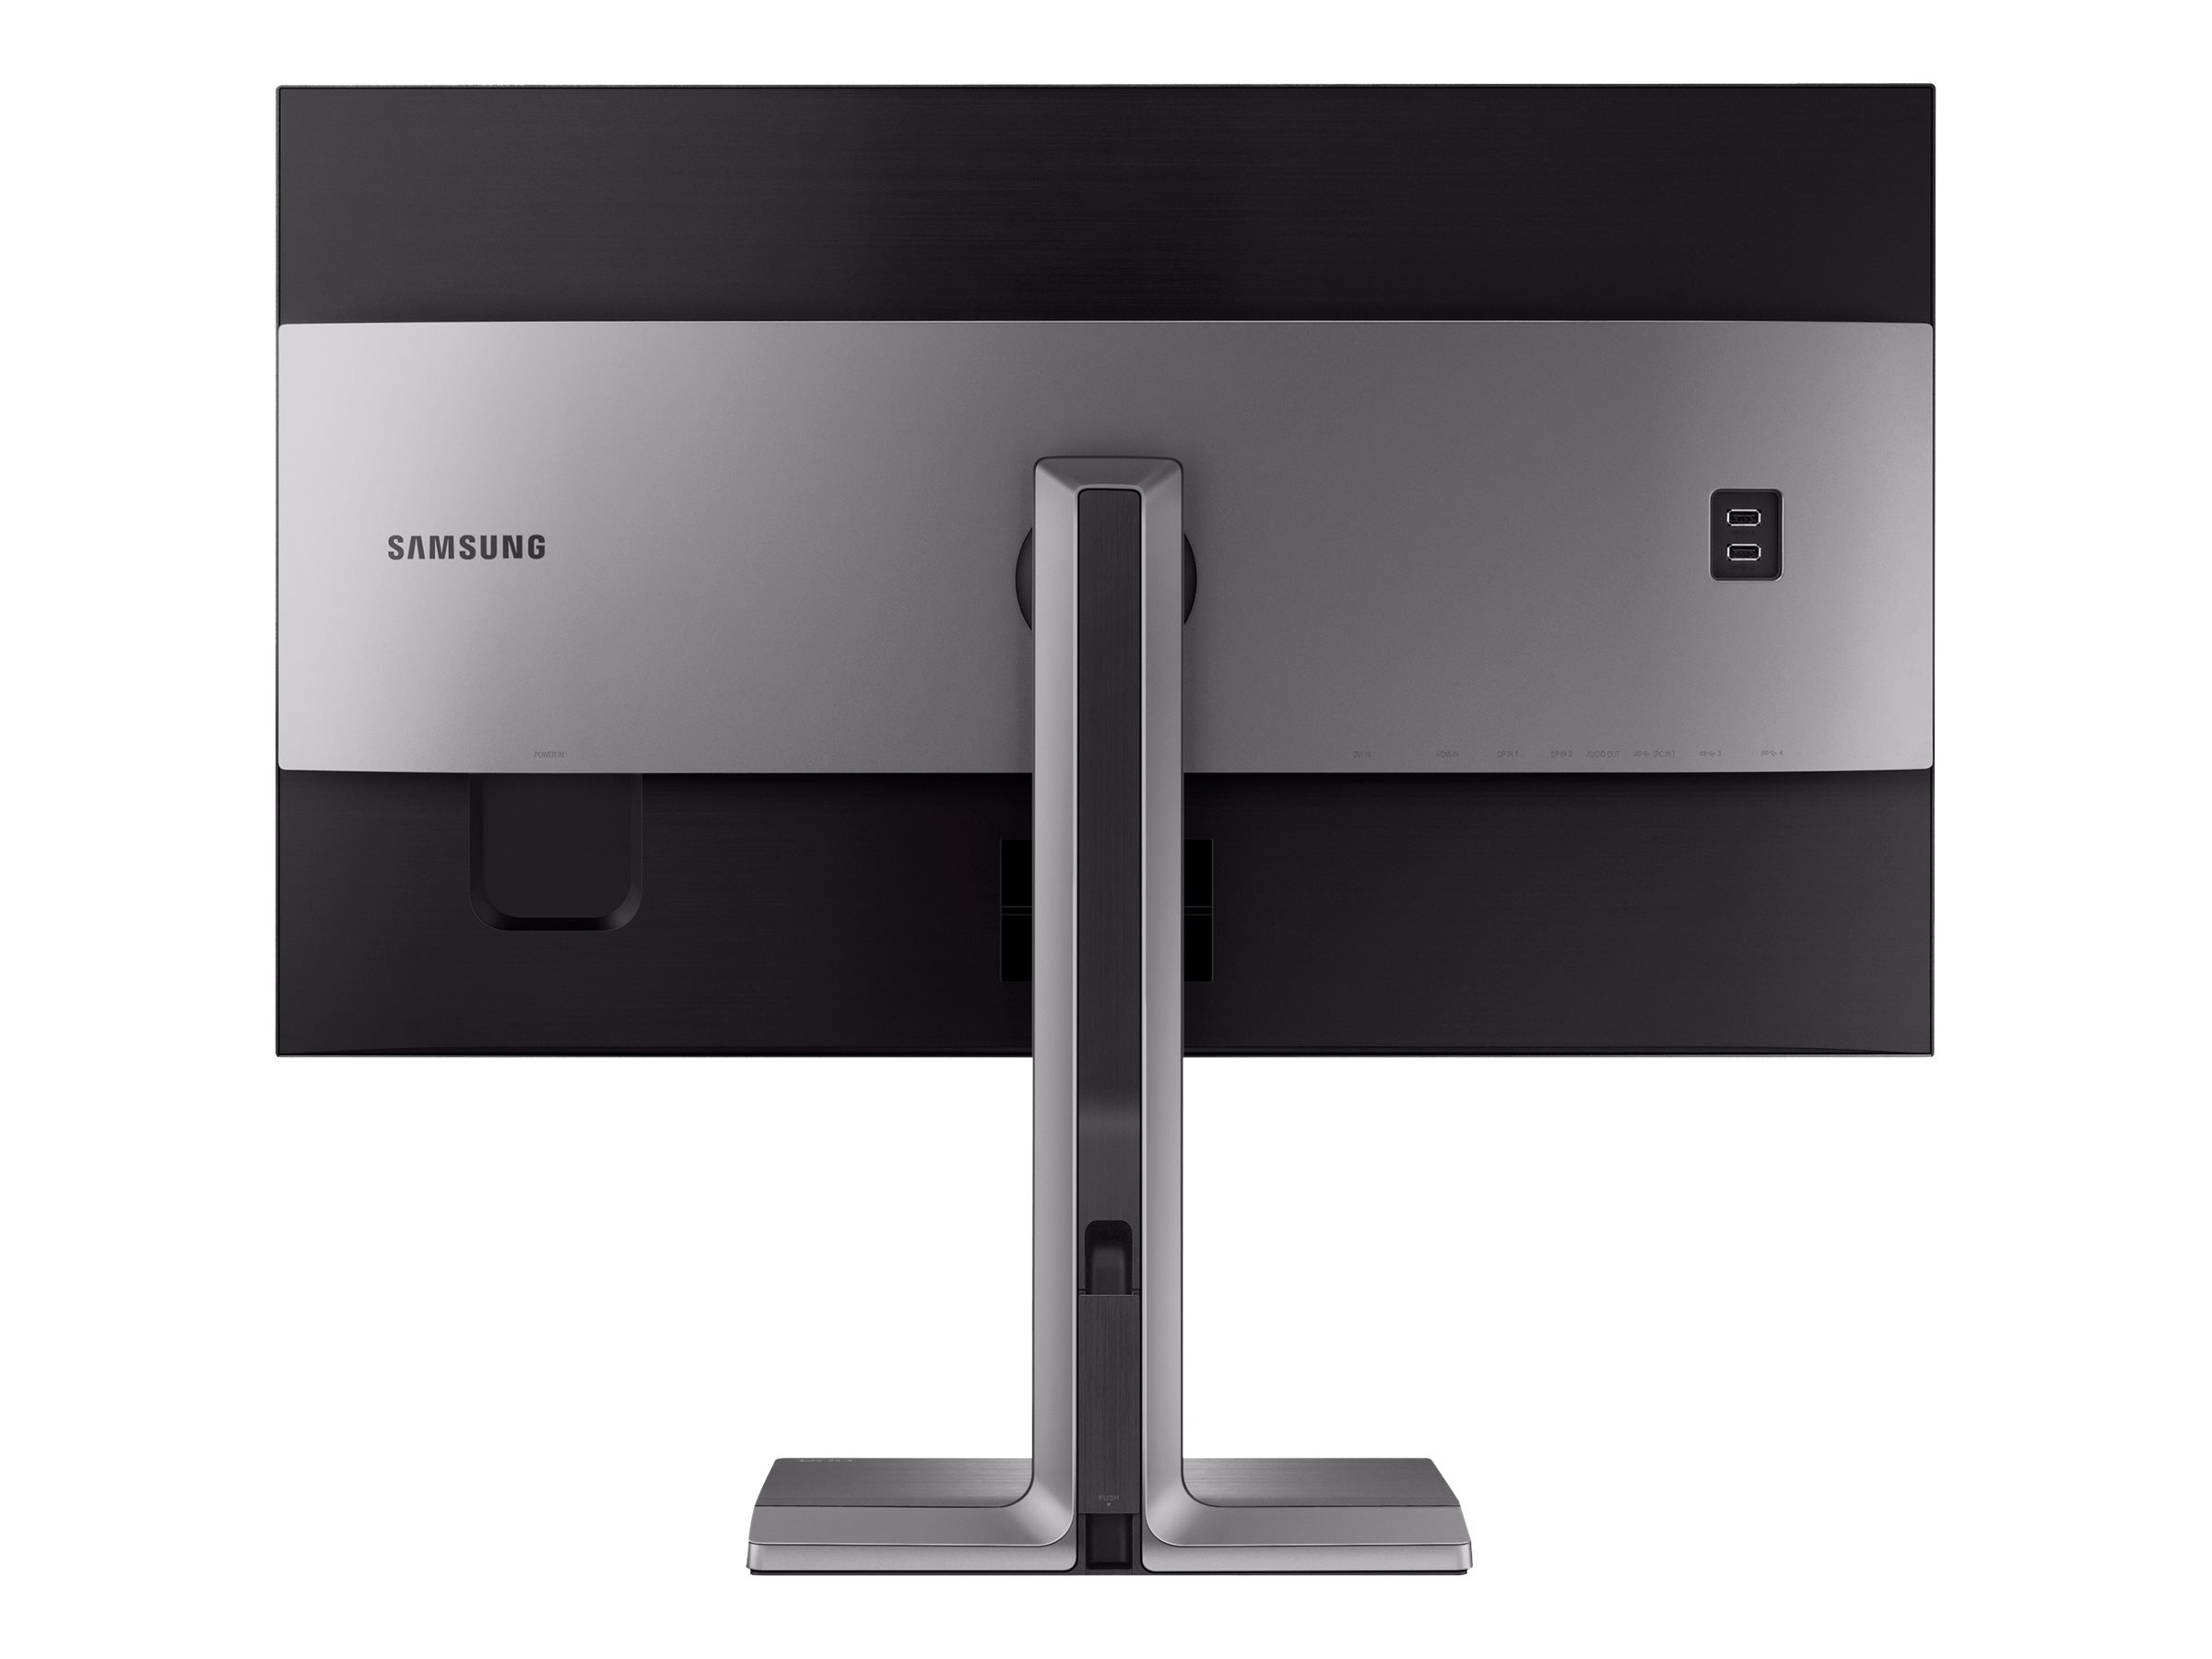 Samsung U32D970Q - UD970 Series - écran LED - 31.5" - 3840 x 2160 4K UHD (2160p) @ 60 Hz - Plane to Line Switching (PLS) - 350 cd/m² - 1000:1 - 8 ms - HDMI, DVI-D, DisplayPort - noir mat, titan argenté - LU32D97KQSR/EN - Écrans d'ordinateur